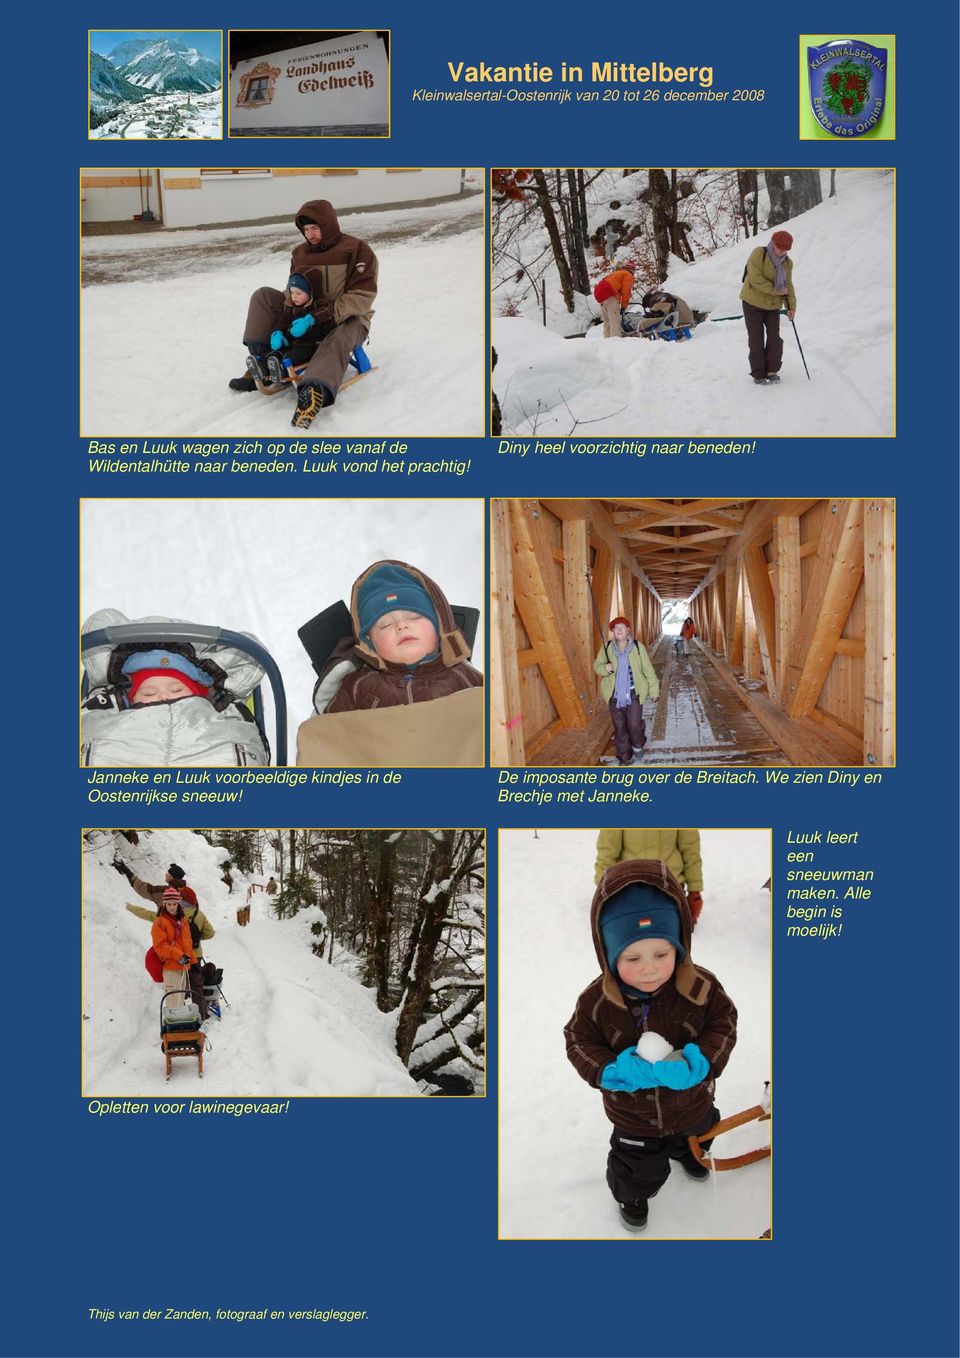 Janneke en Luuk voorbeeldige kindjes in de Oostenrijkse sneeuw!